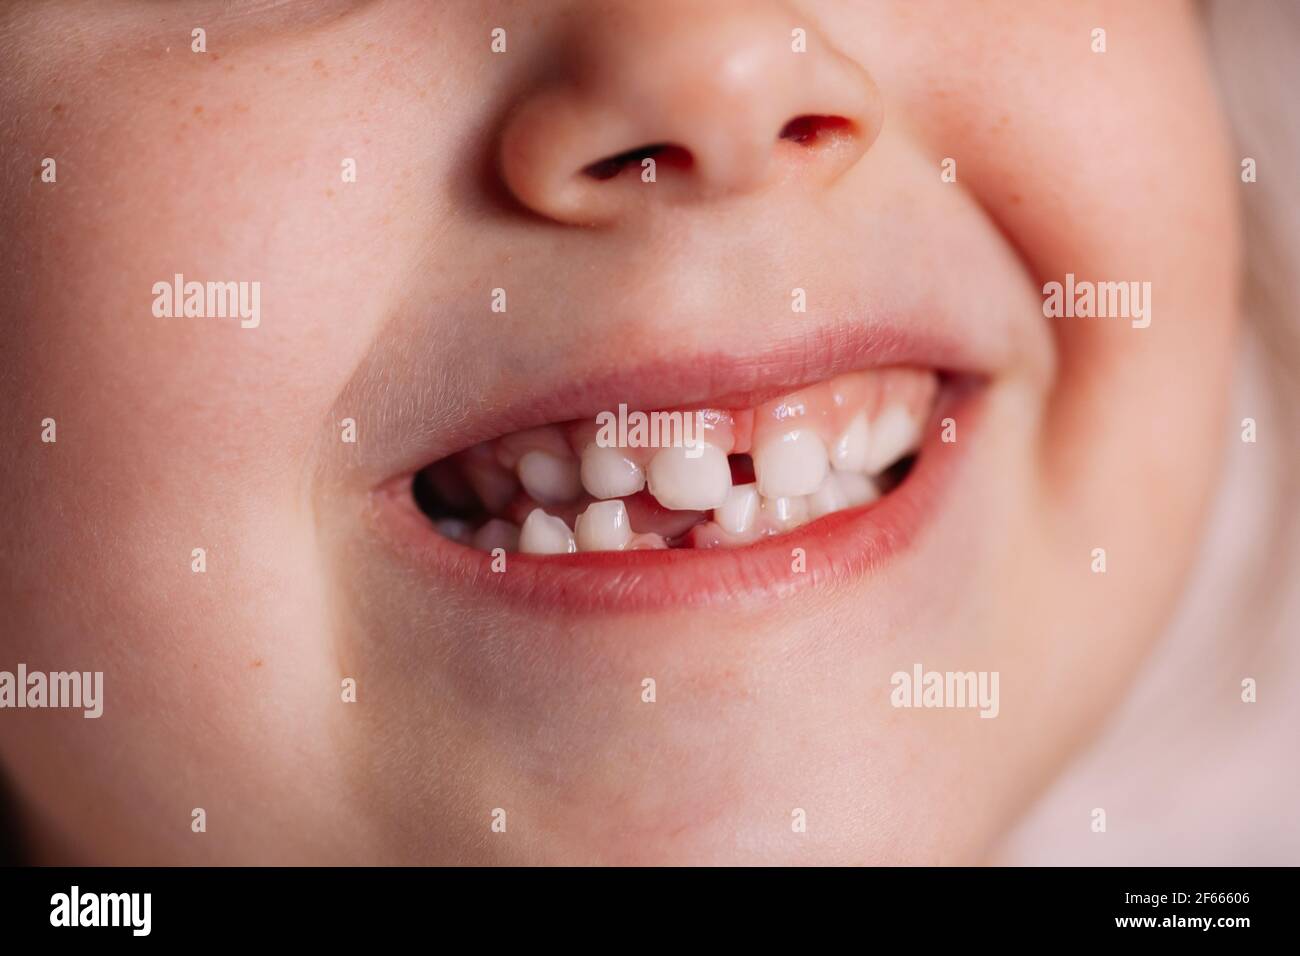 primo piano, sorridente bocca di un bambino di cinque o sei anni con un buco nella gengiva sulla fila inferiore di denti di un bambino caduto, orgoglio di crescere Foto Stock